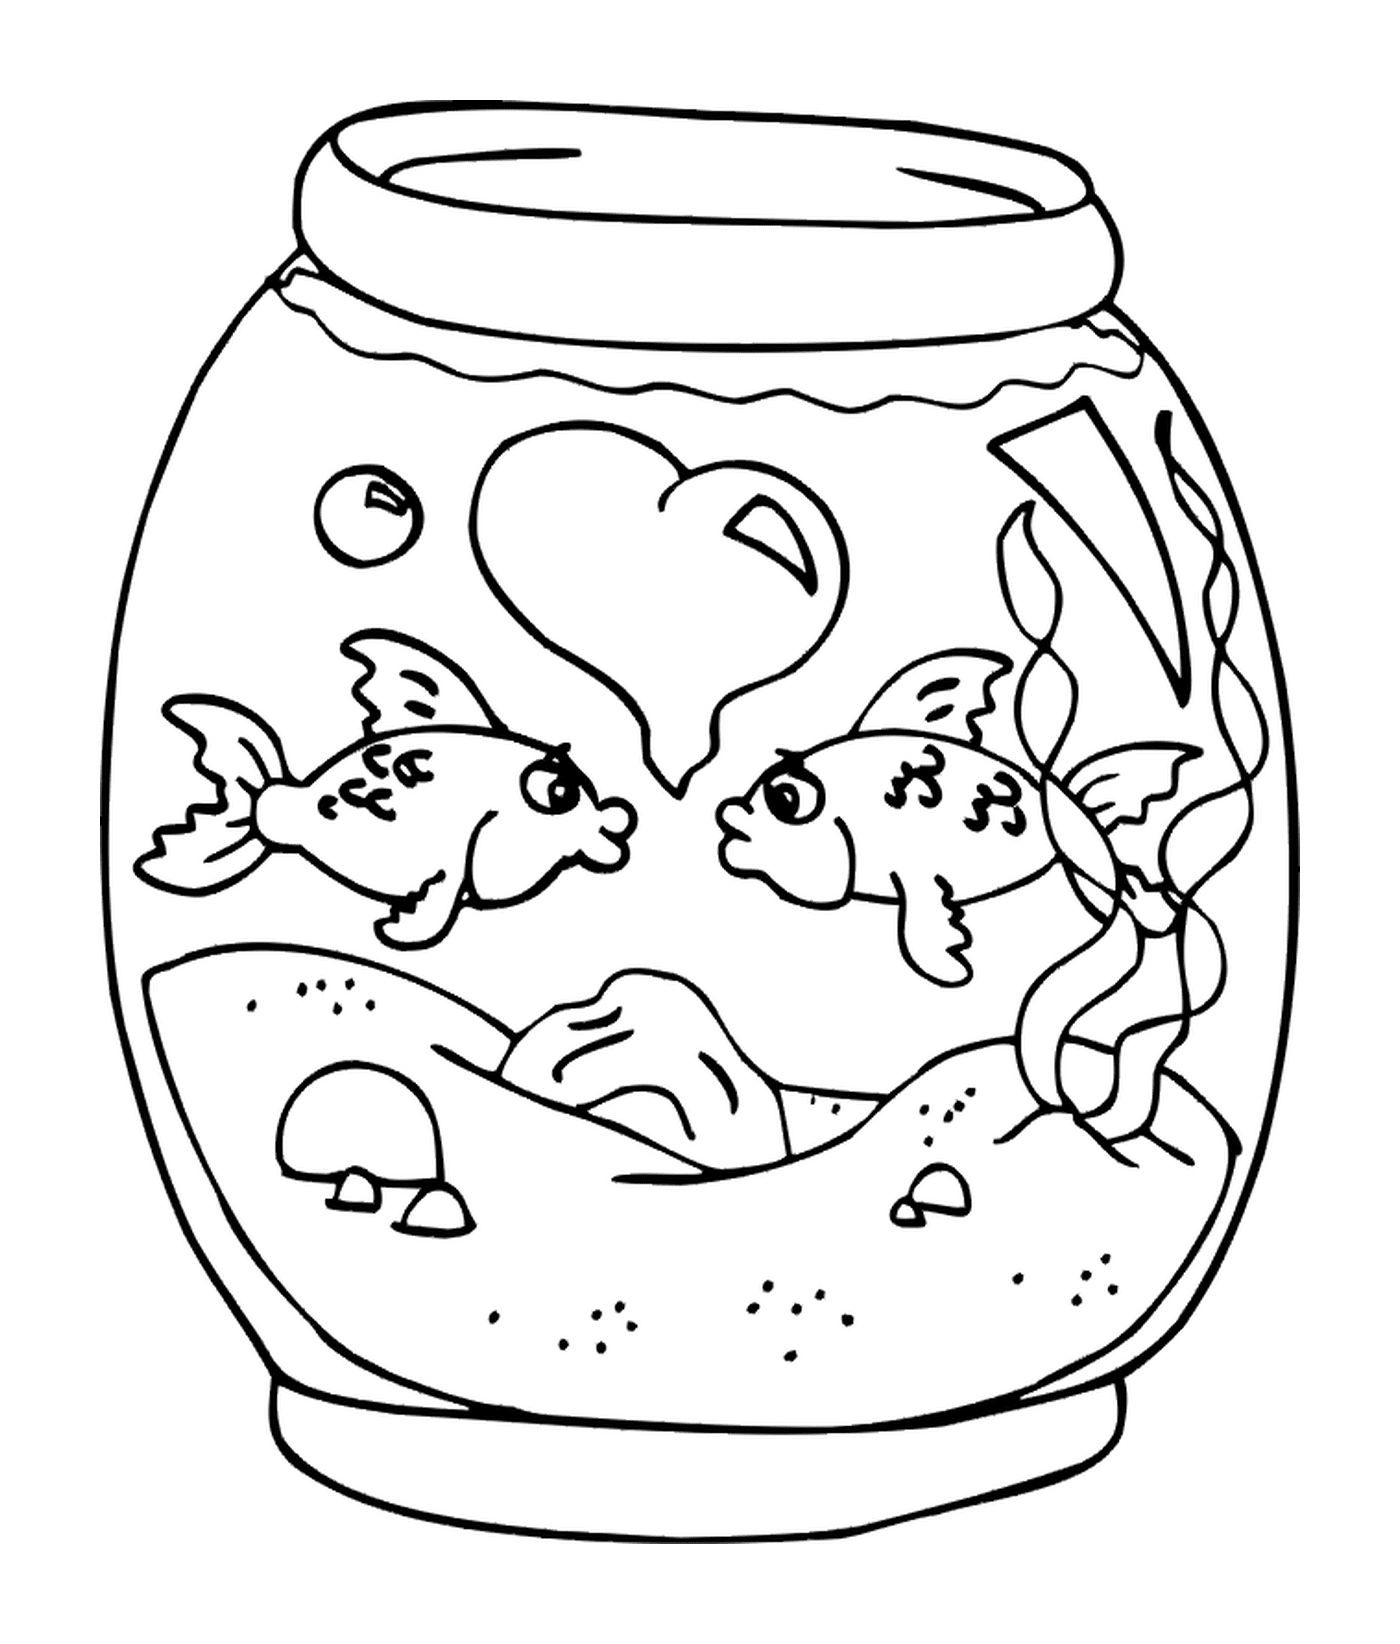  Fish in a jar 